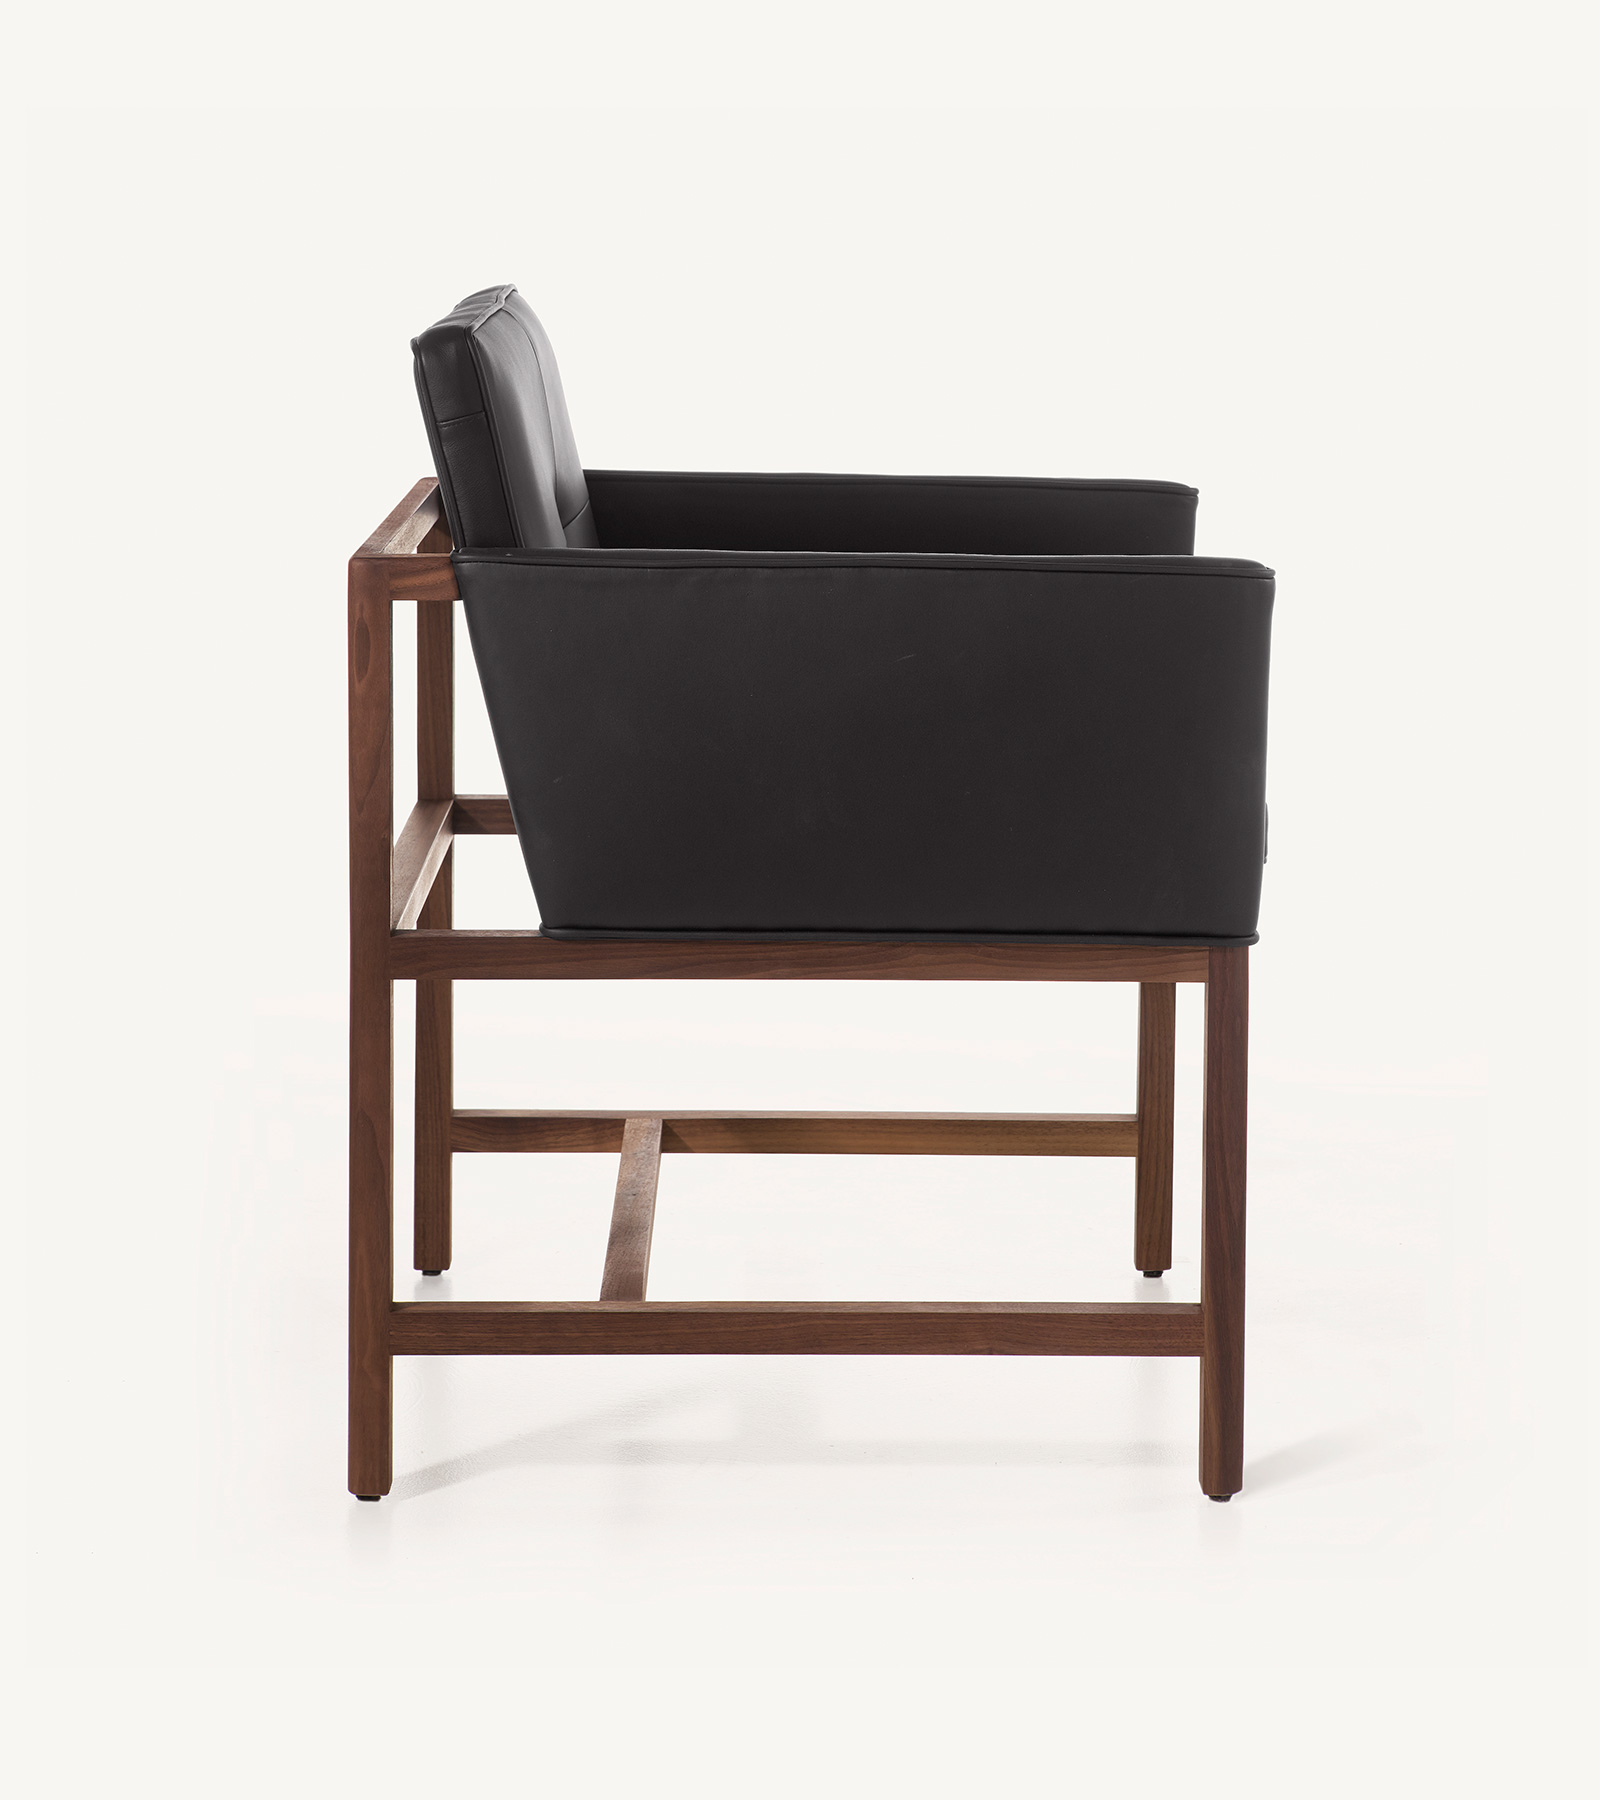 TinnappleMetz-bassamfellows-Wood-Frame-Chair-05